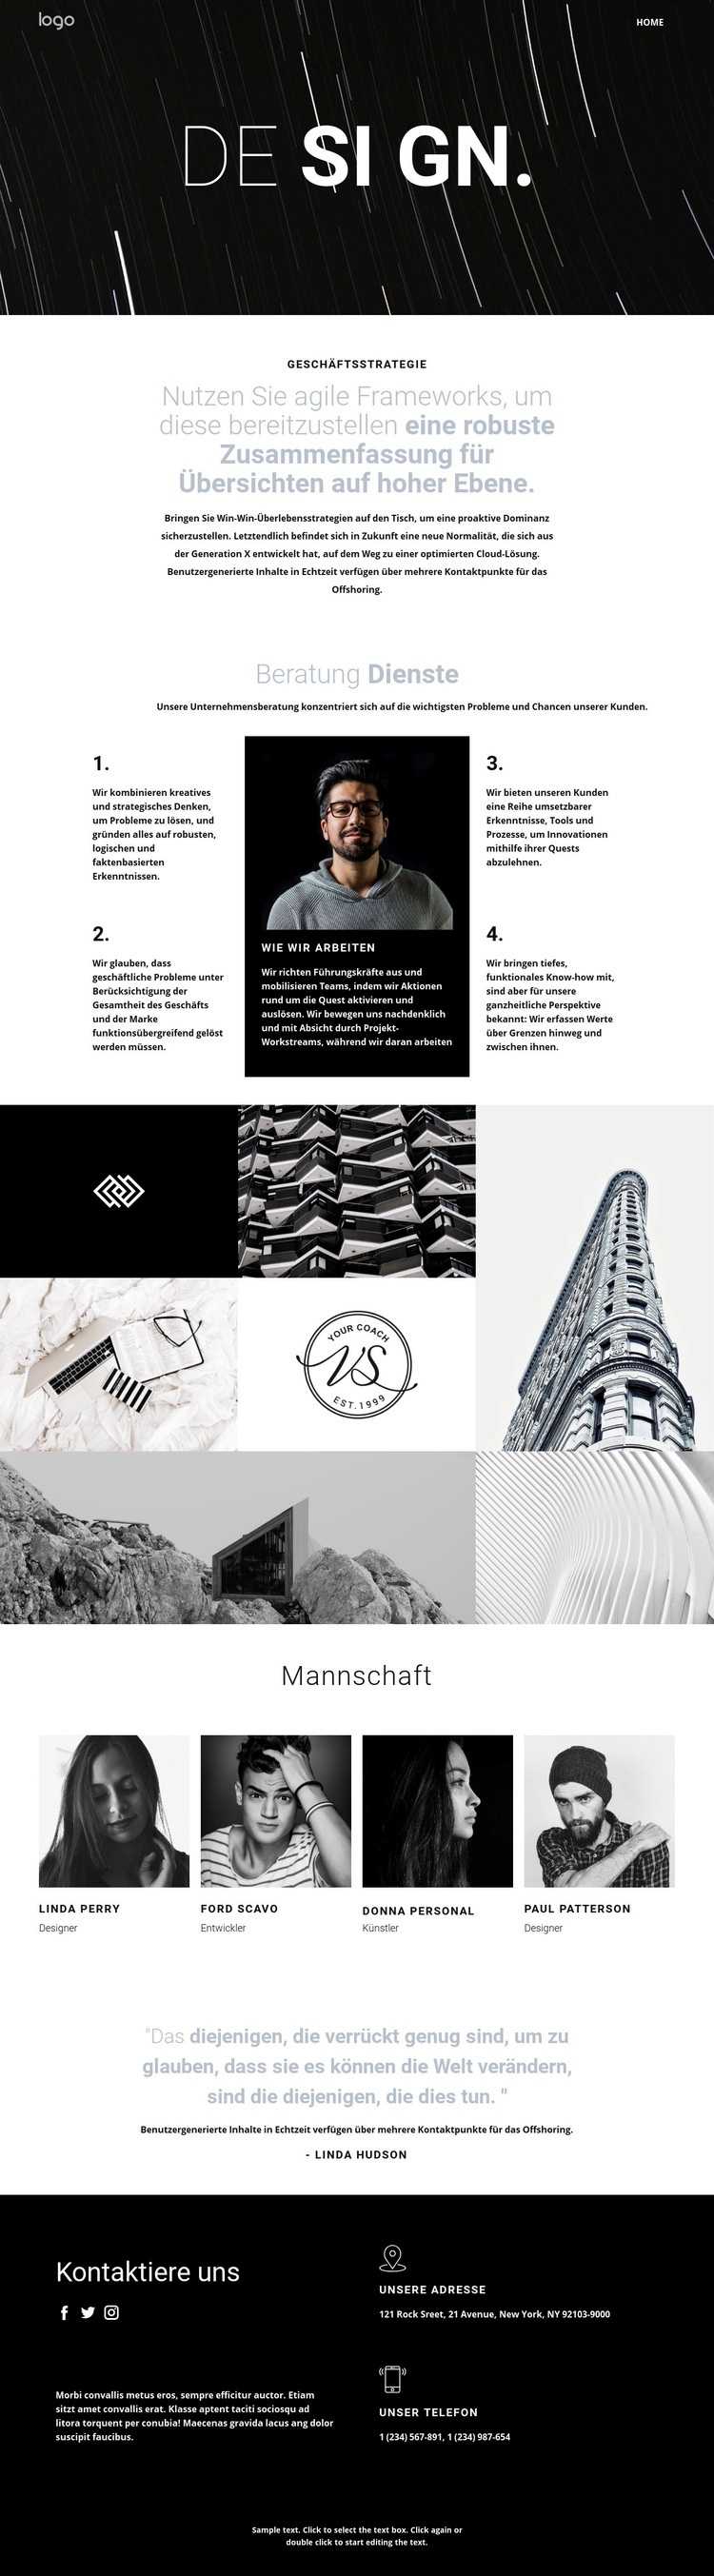 Design und kreative Kunst Website-Modell